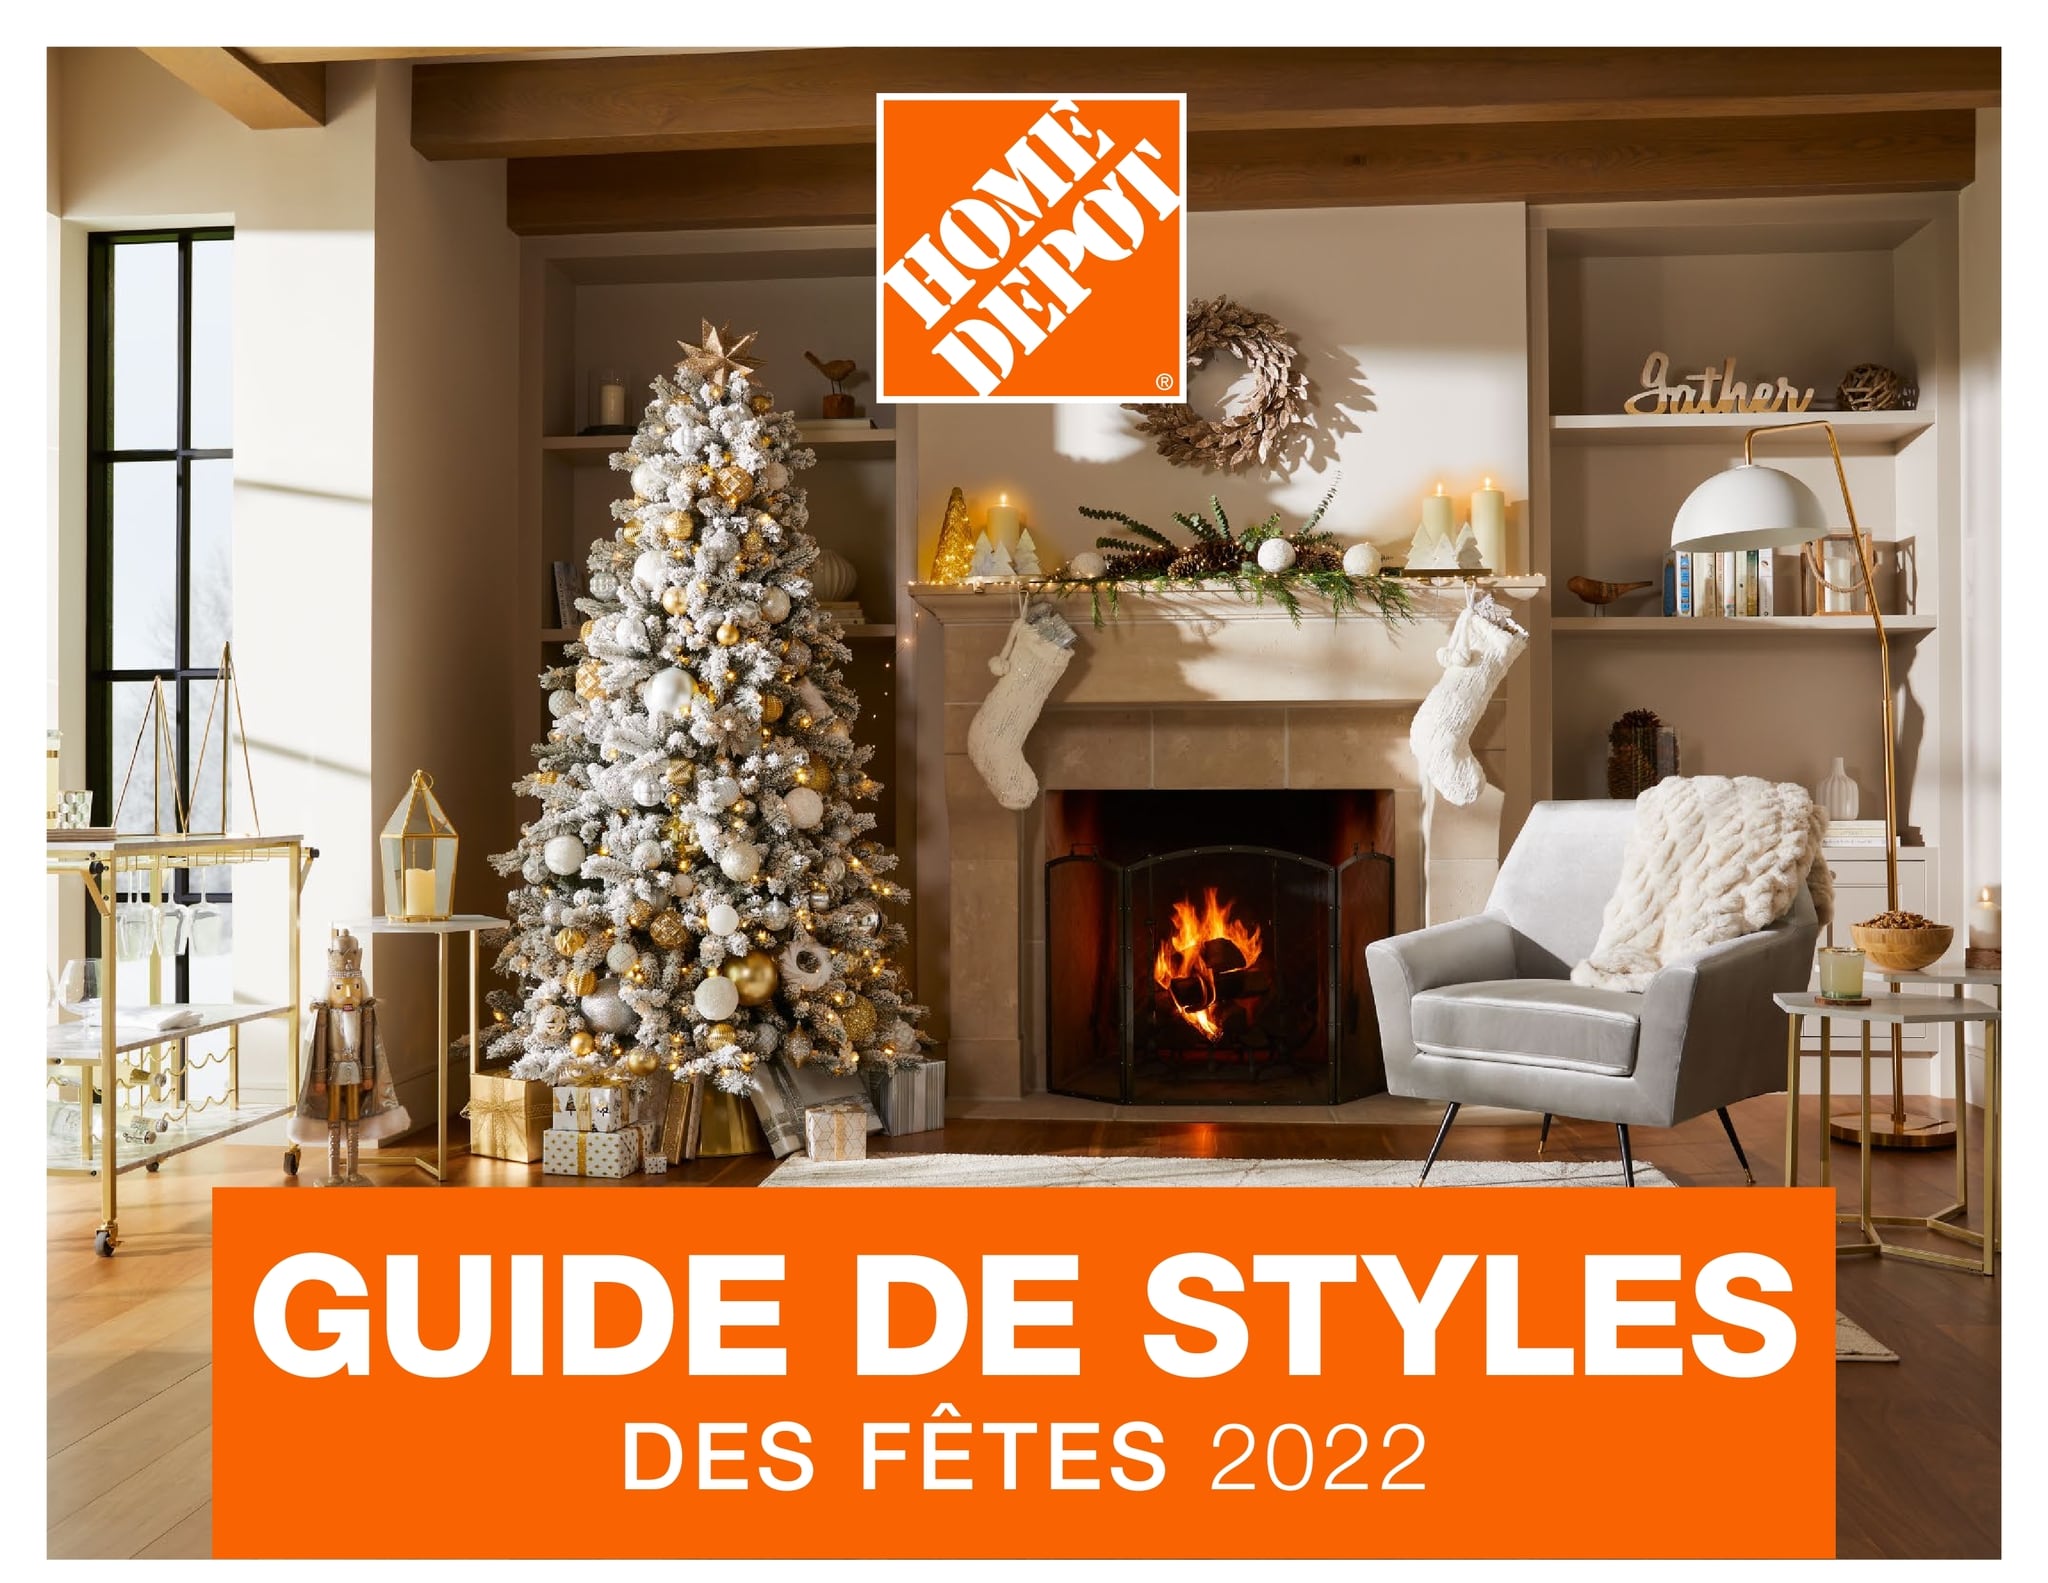 Circulaire Home Depot - Guide de Styles des Fêtes 2022 - Page 1